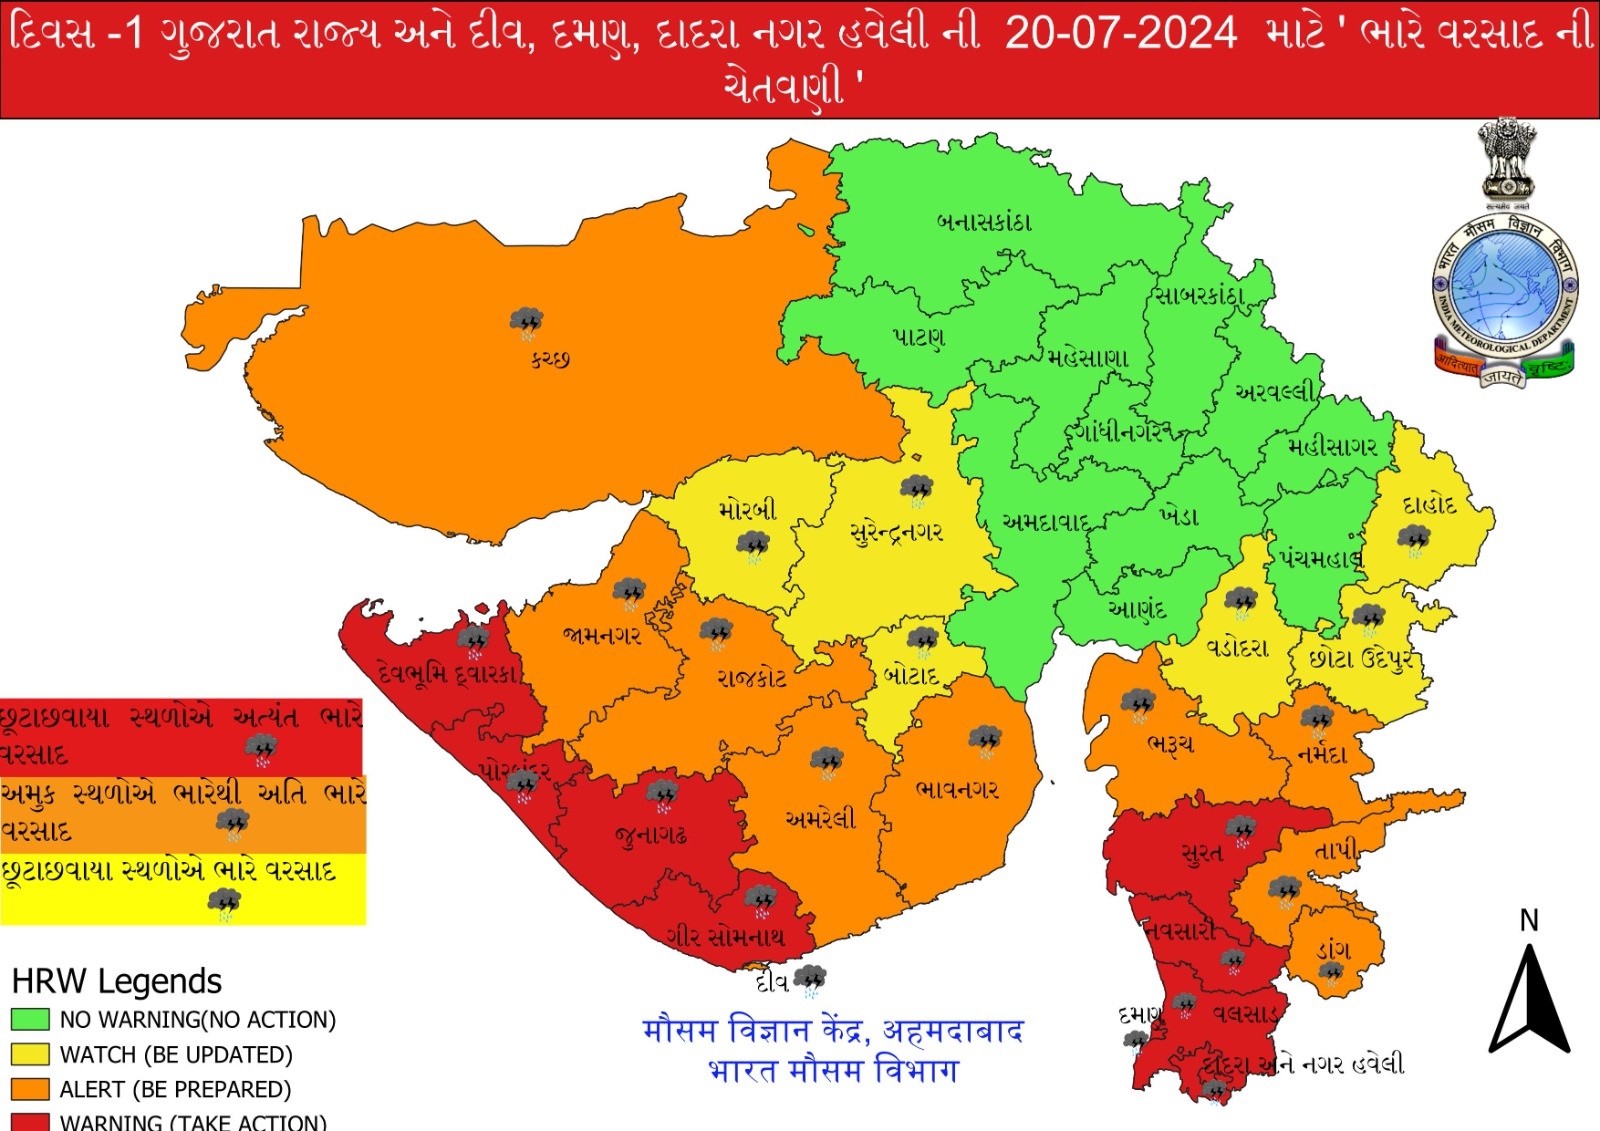 આગામી 4 દિવસ ગુજરાત માટે ‘અતિ ભારે’, નર્મદામાં હવામાન વિભાગ દ્વારા રેડ એલર્ટ જાહેર;